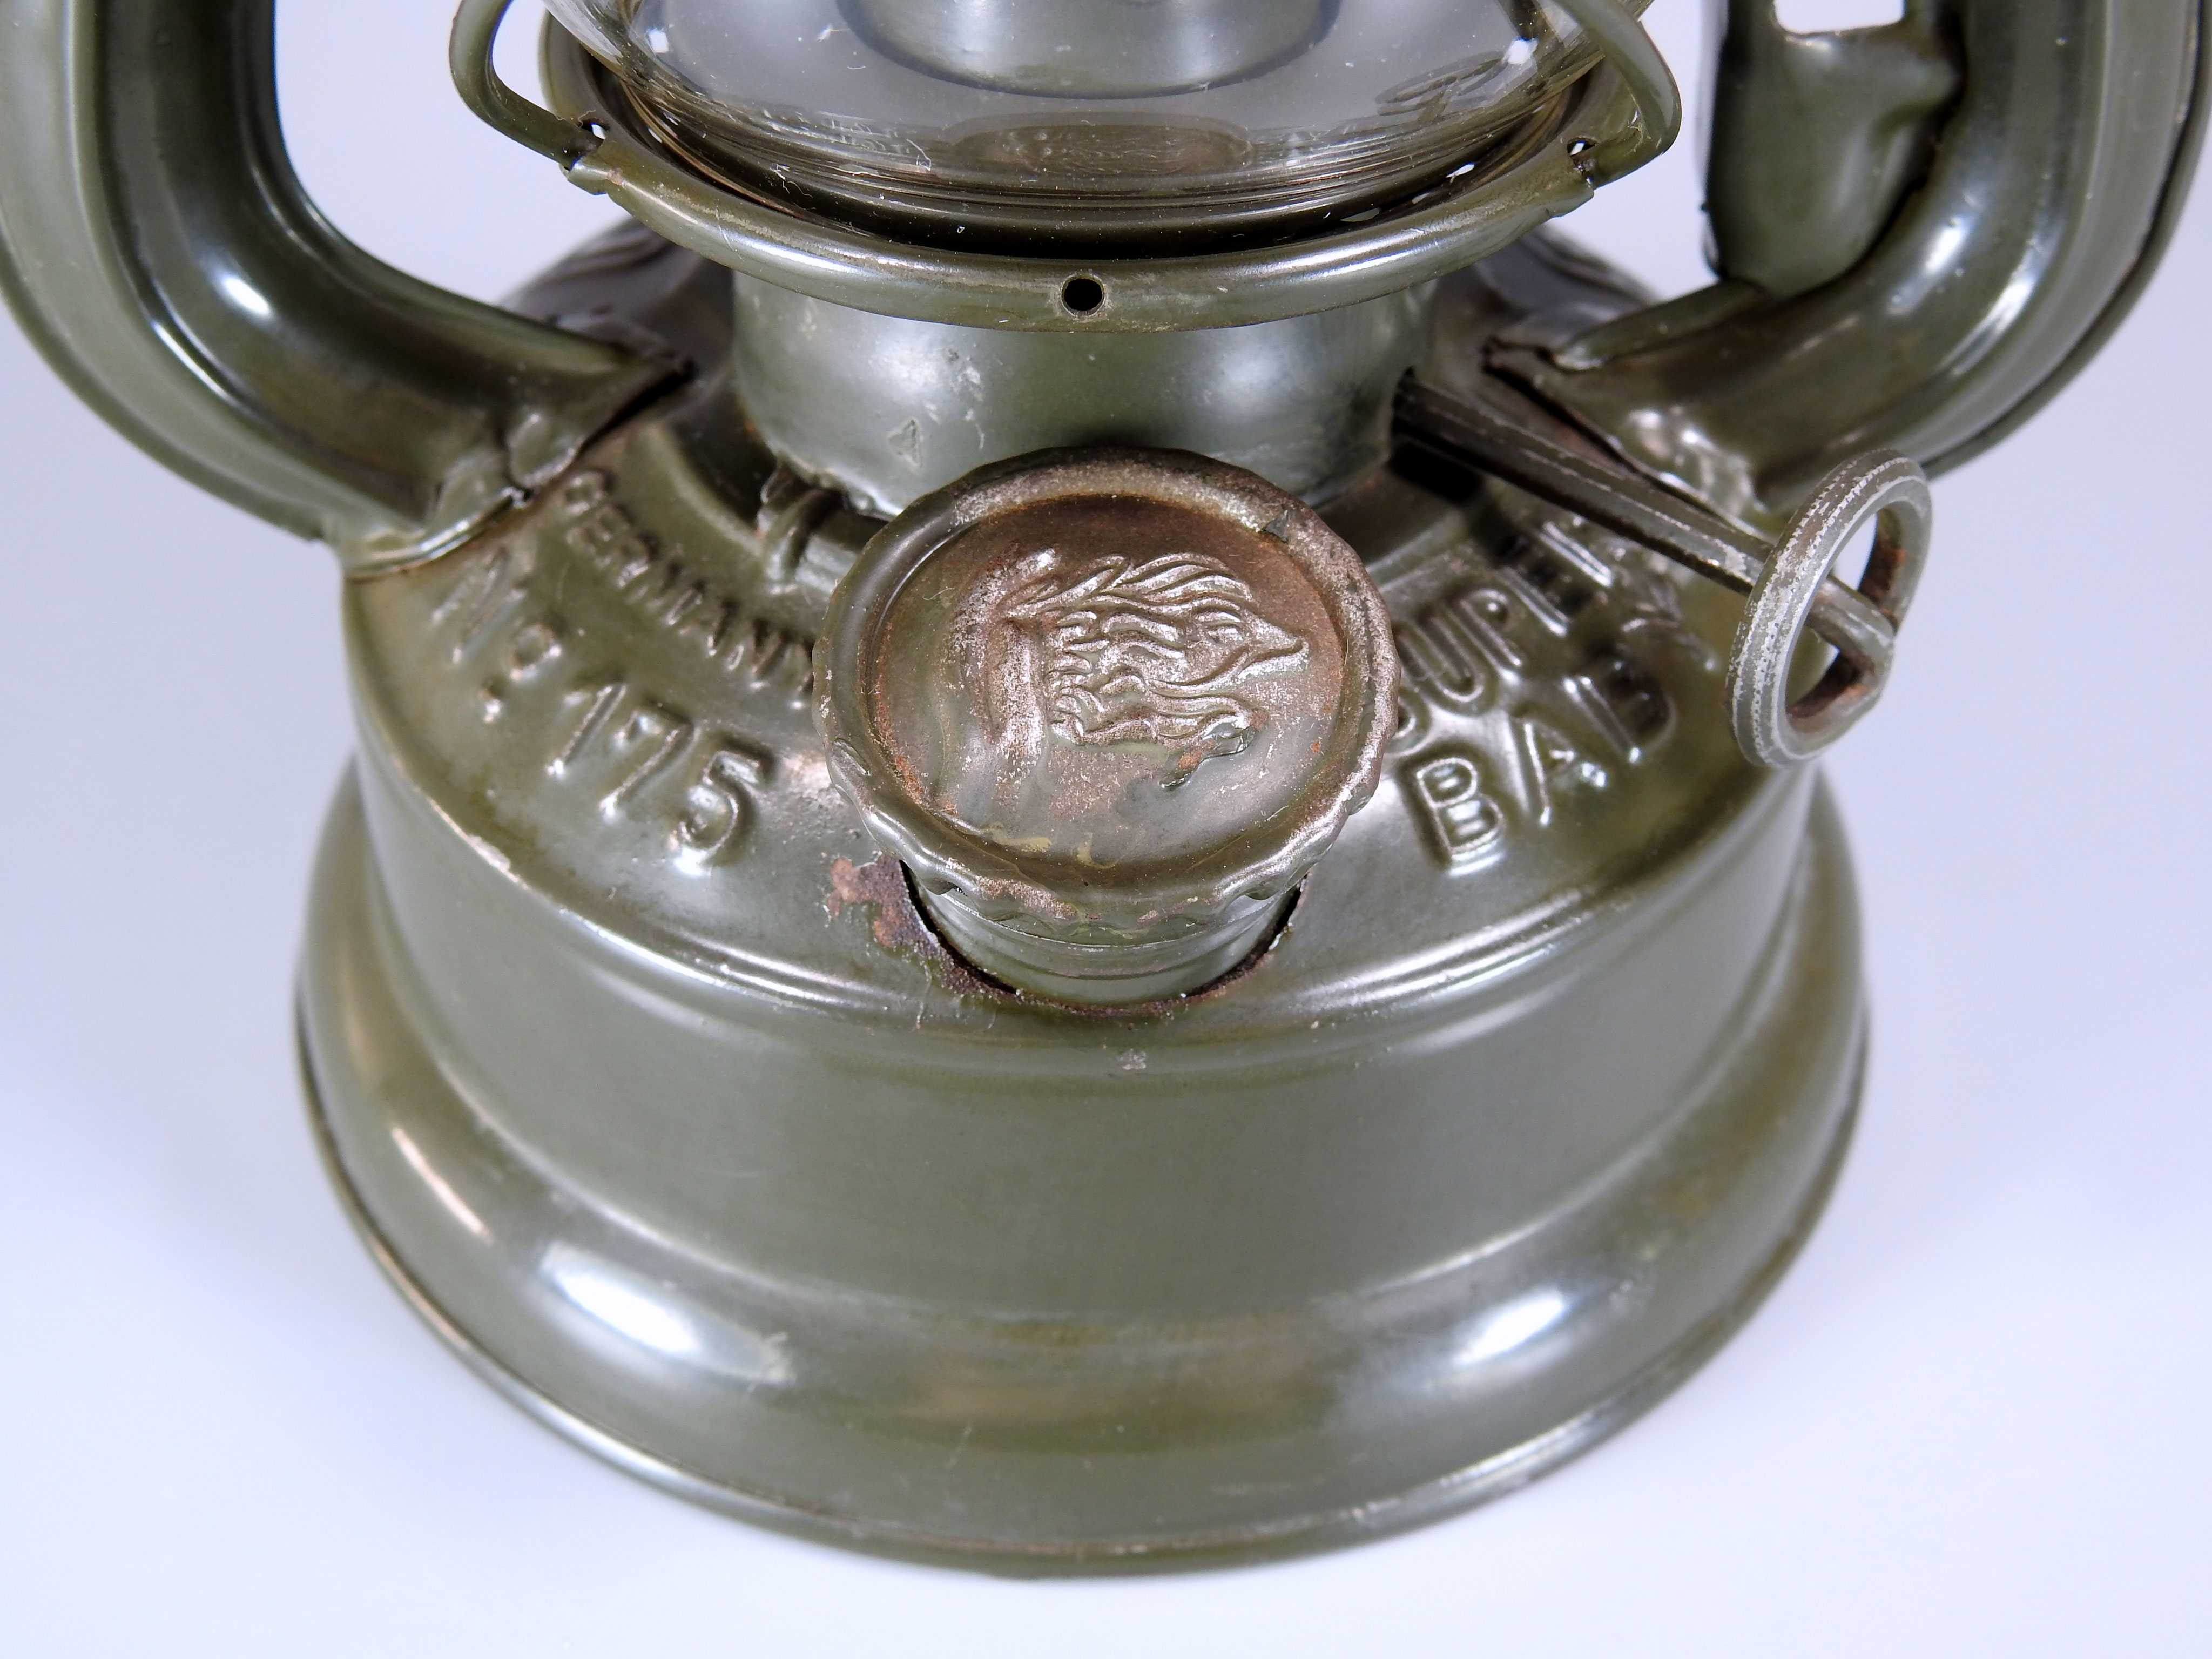 Feuerhand 175 Superbaby w. war relic - The Loveland Lantern Collection